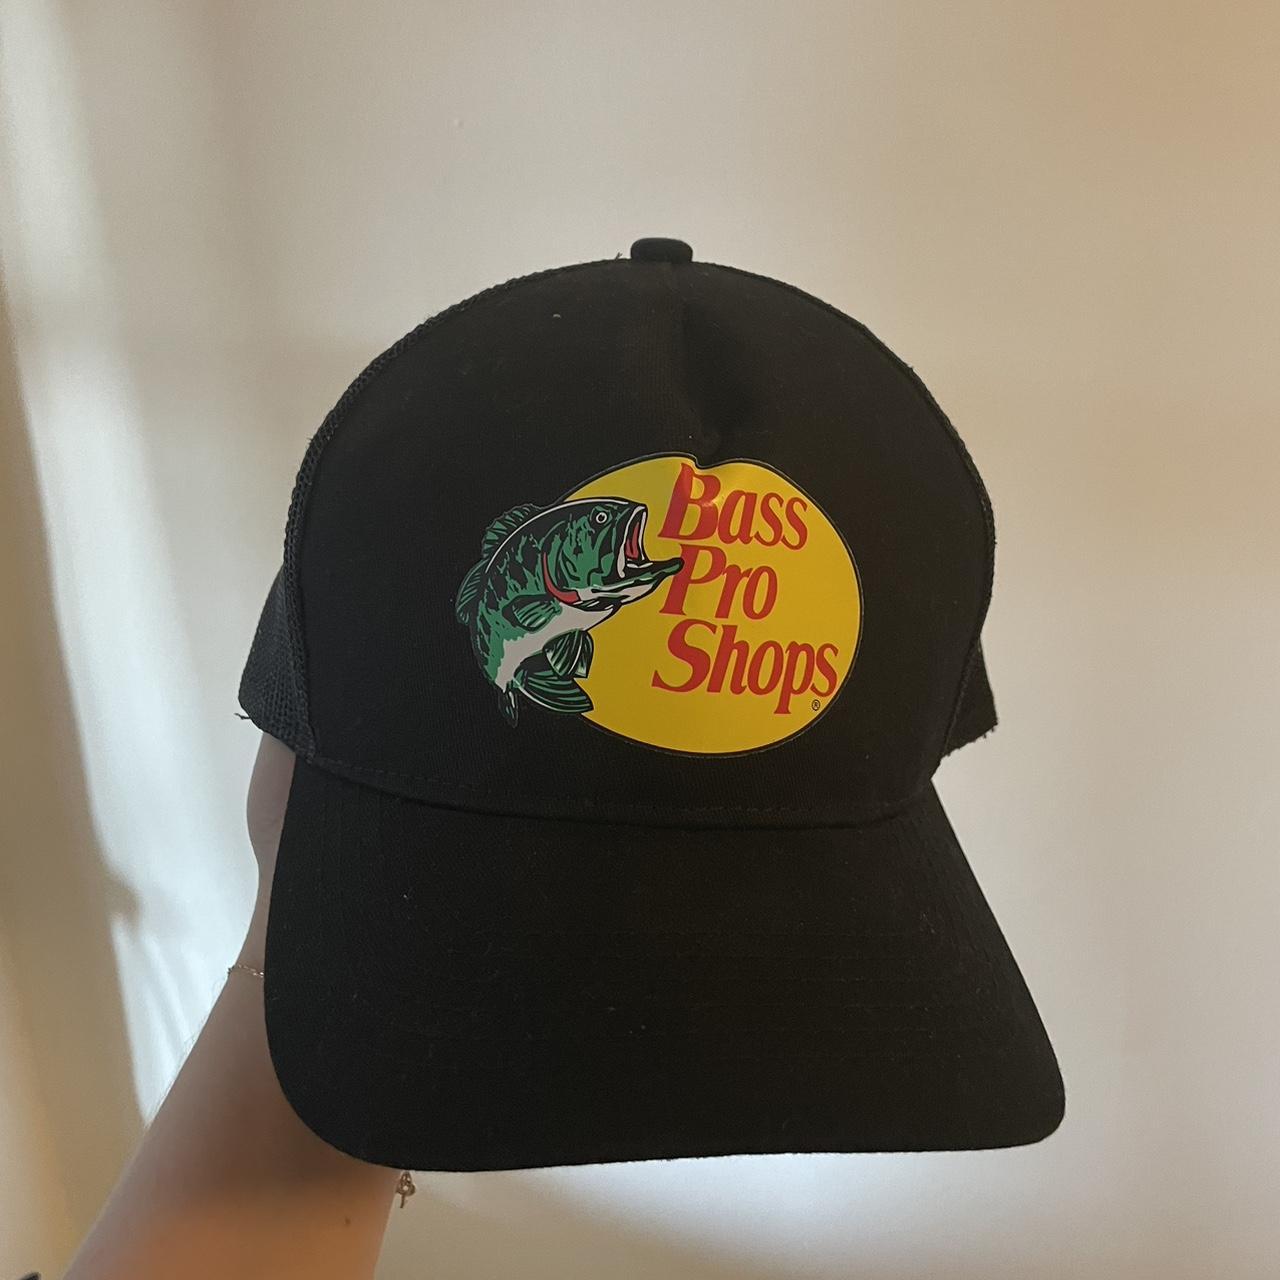 Bass Pro Shop black trucker hat. 🐟🐠🎣Never worn. - Depop